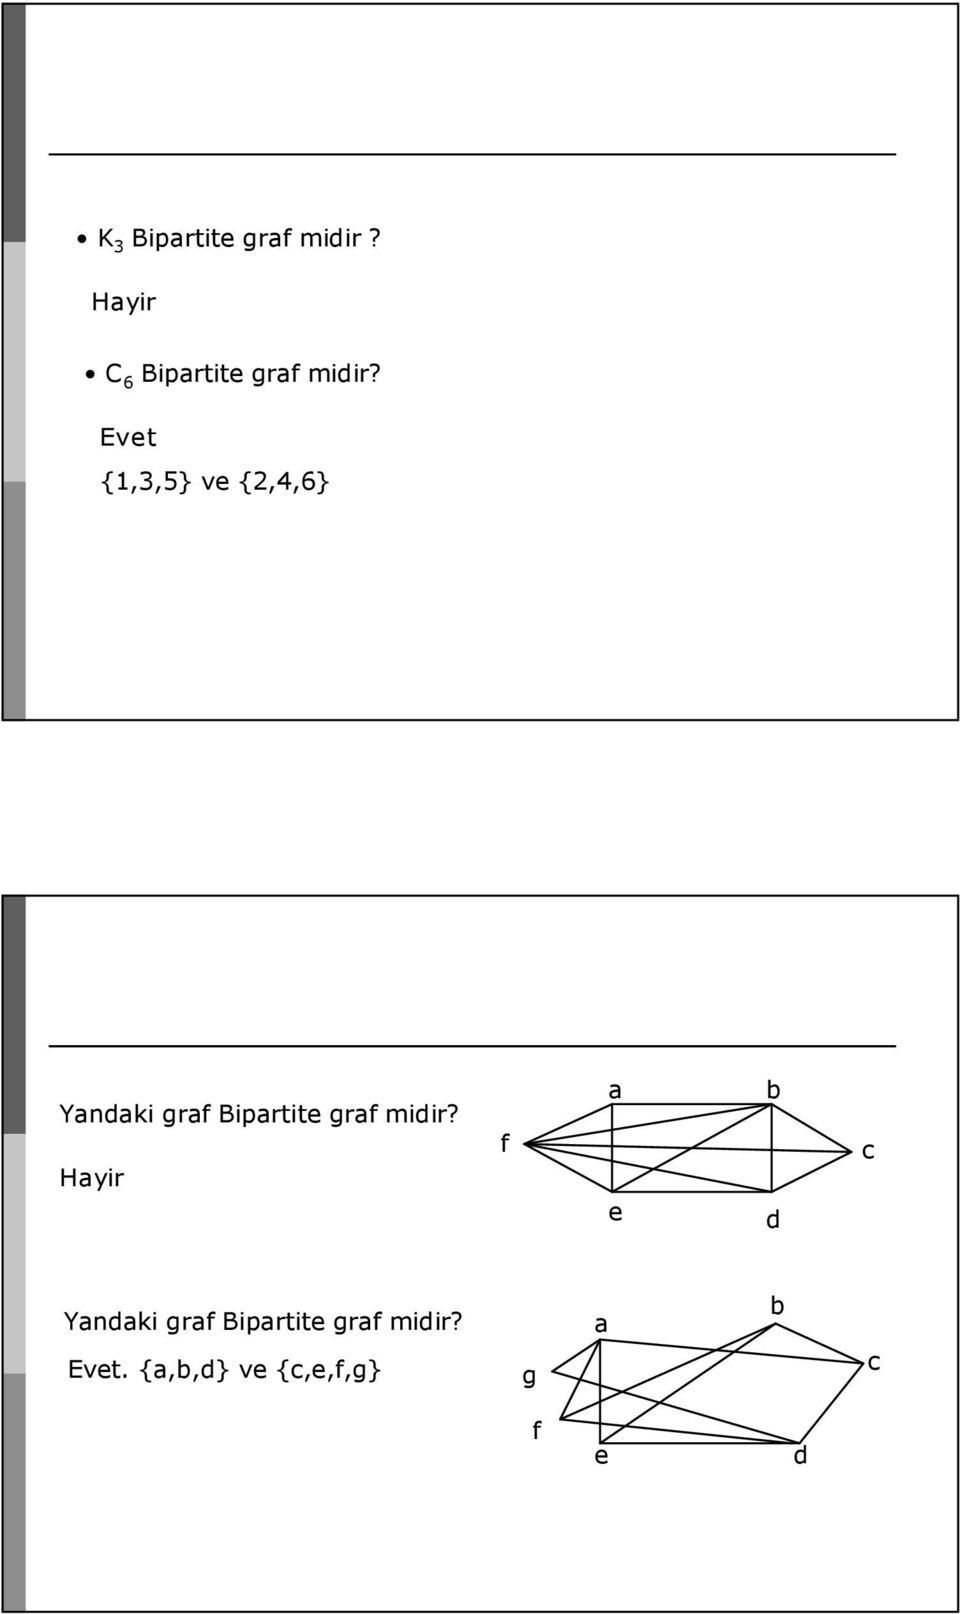 Evet {,3,5} ve {2,4,6} Yandaki graf Bipartite graf